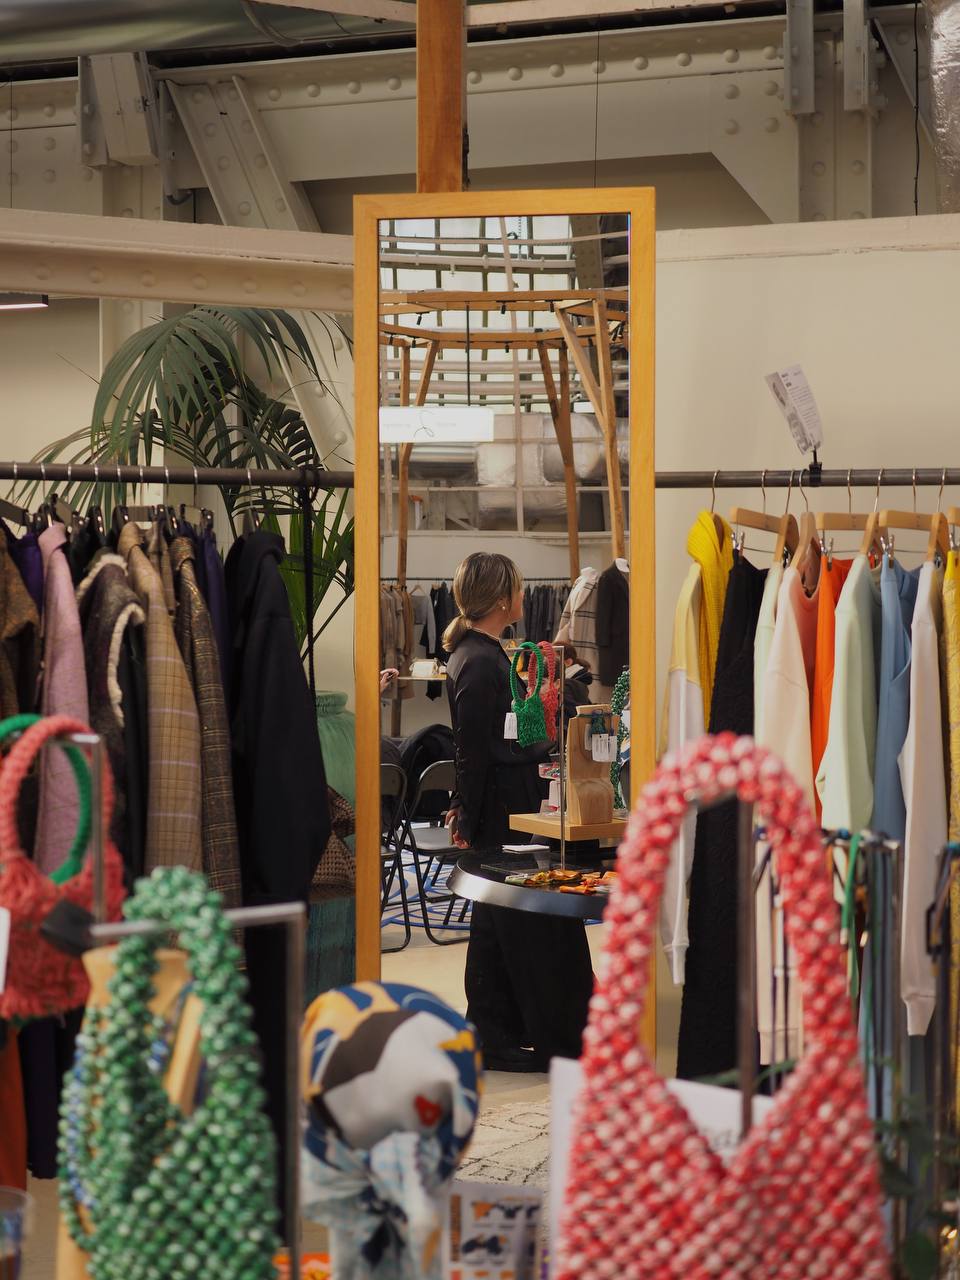 SPOGAD: украинский бренд со стильными аксессуарами из локально переработанного пластика завоевывает мировое признание в эксклюзивном Fashion Green Room Printemps Haussmann Paris. 